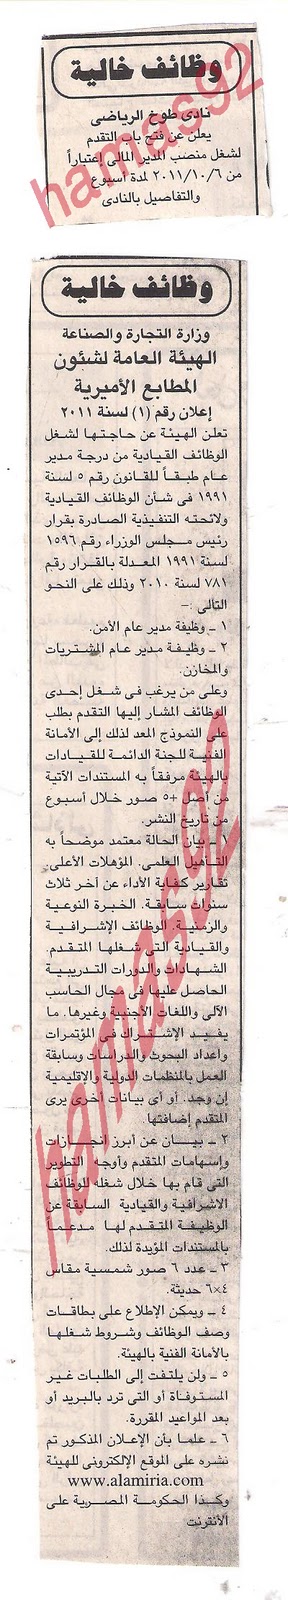 وظائف جريدة الجمهورية الثلاثاء 4/10/2011 Picture+005